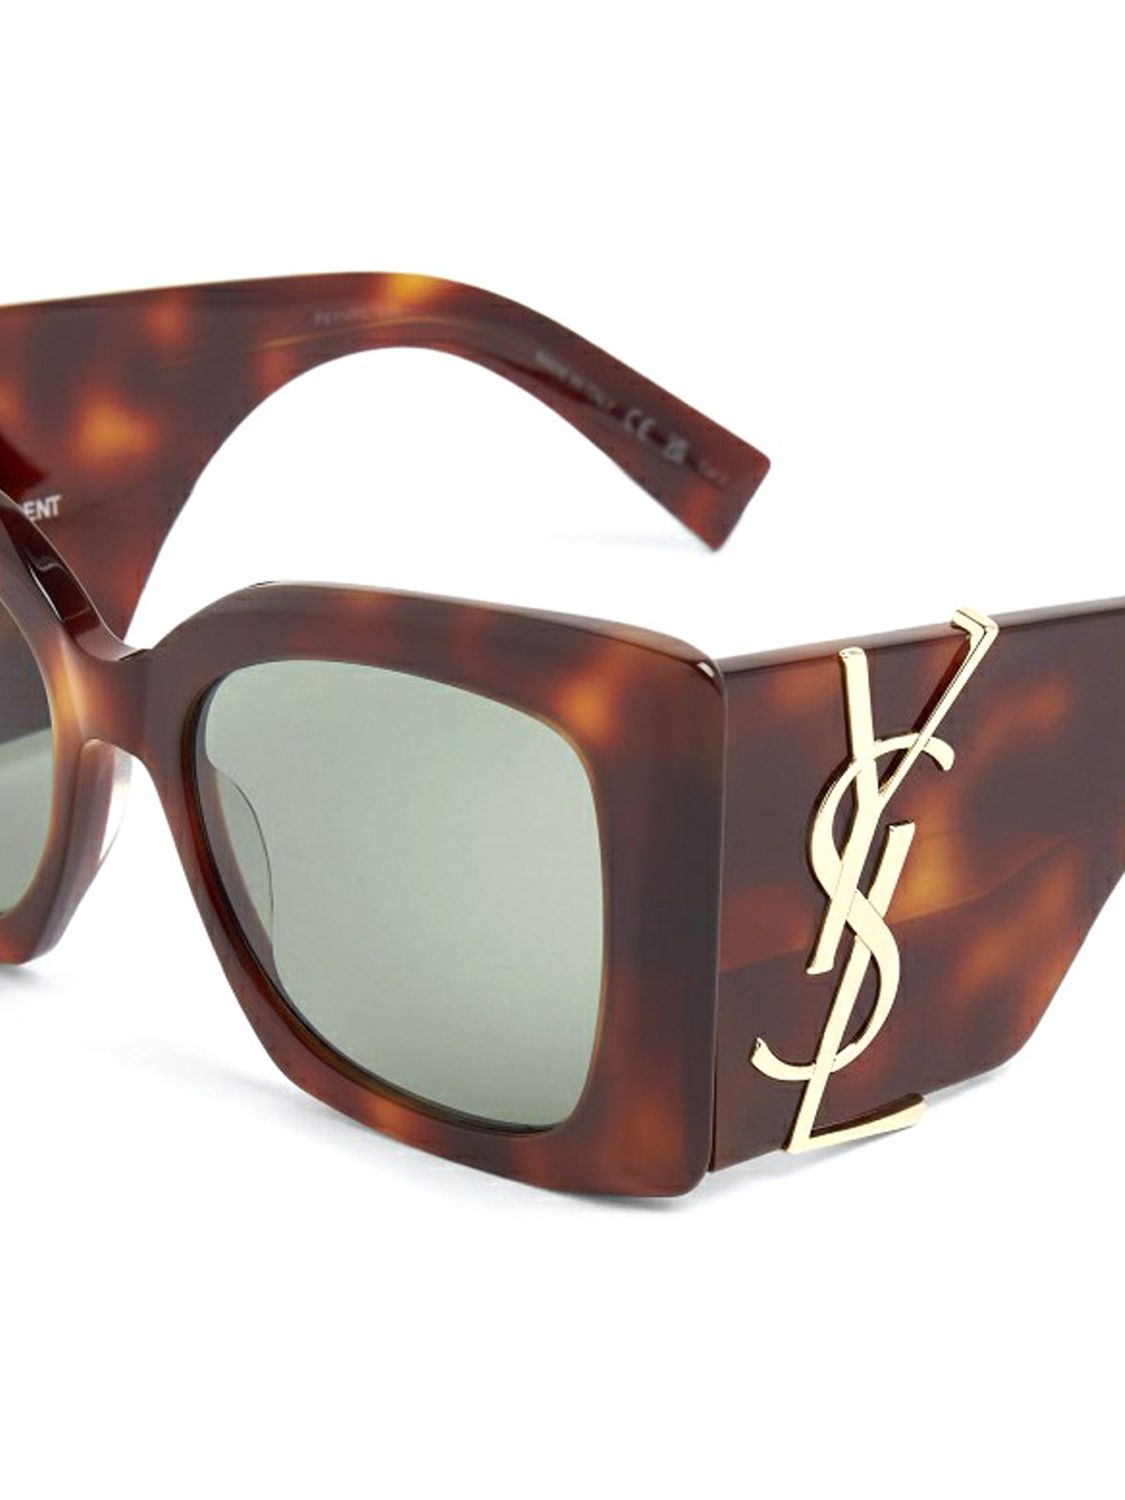 SAINT LAURENT Oversized Brown Tortoiseshell Sunglasses with Green Lenses for Women